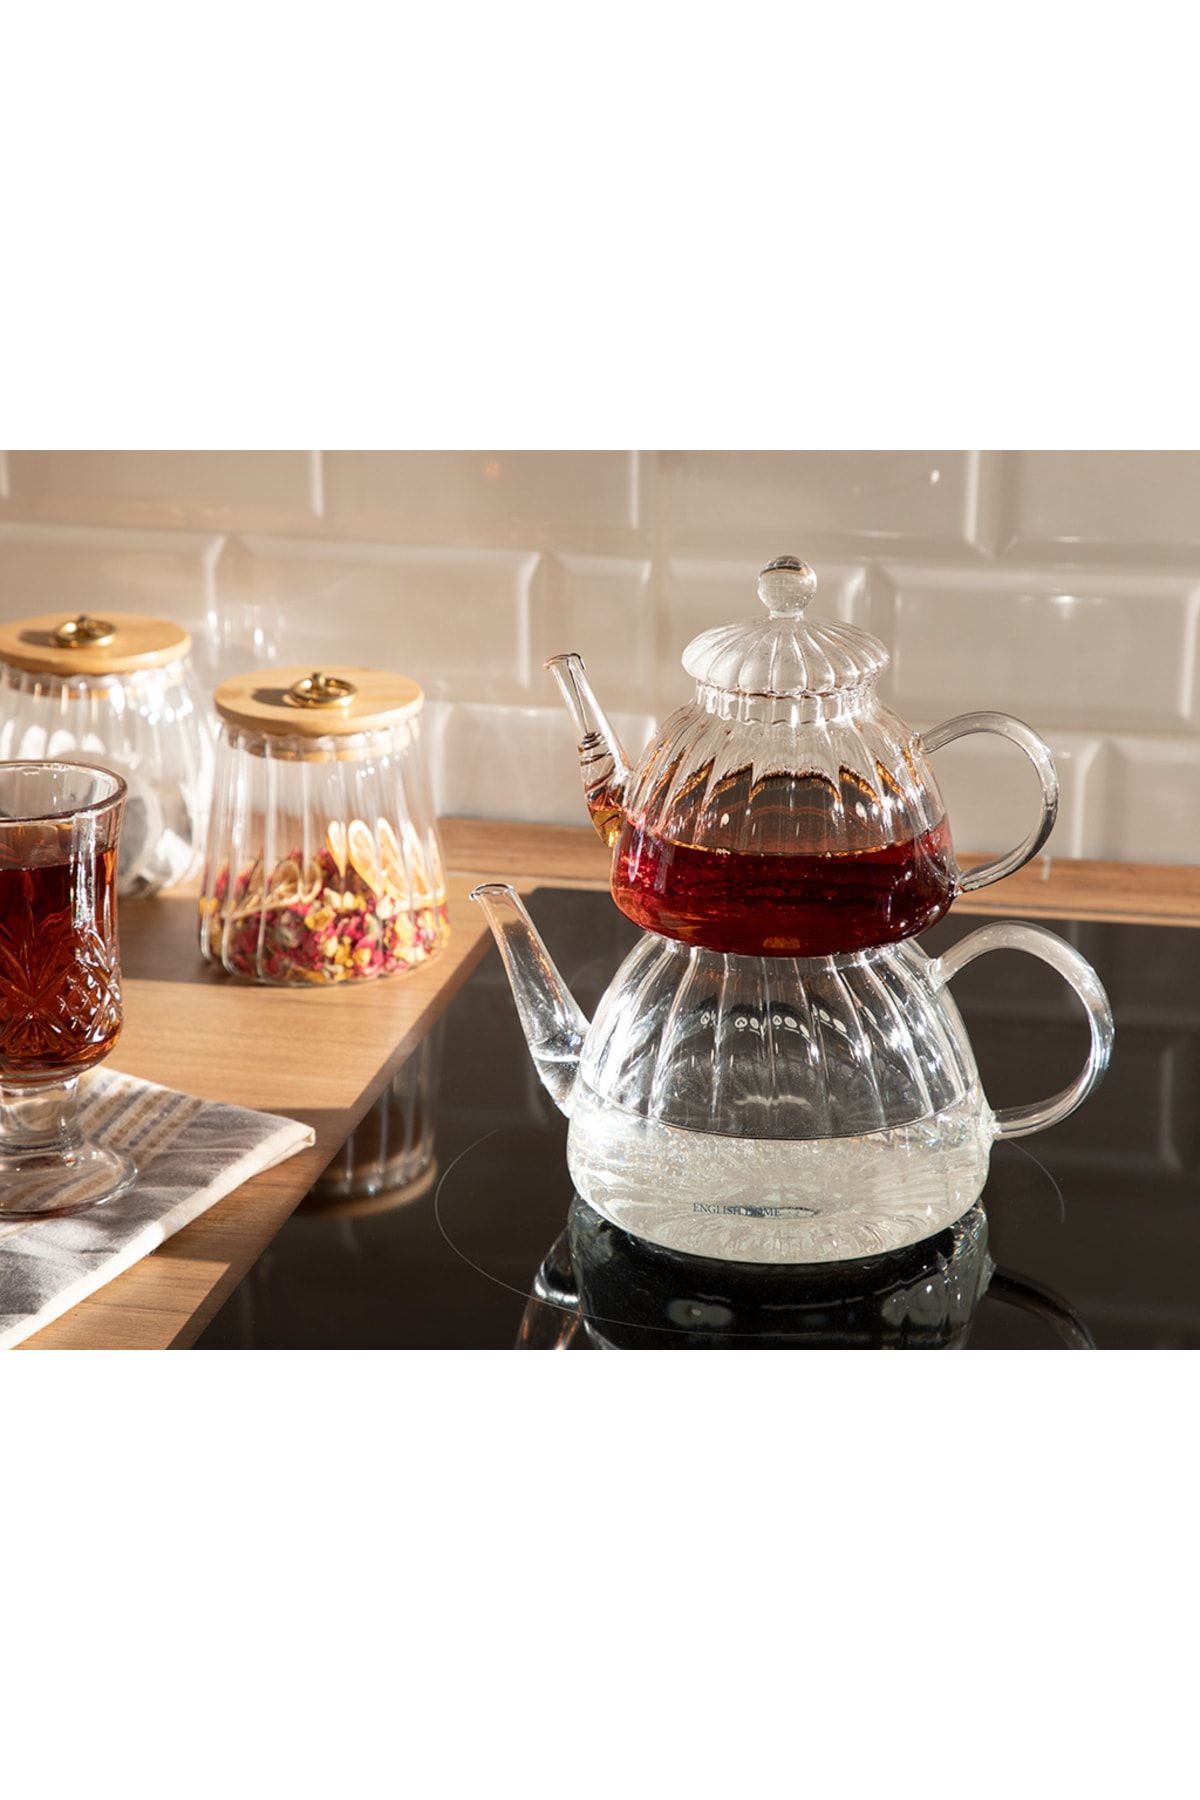 ست چایی ساز مدل روهمی روزلا بوروسیلیکات شیشه ای انگلیش هوم English Home